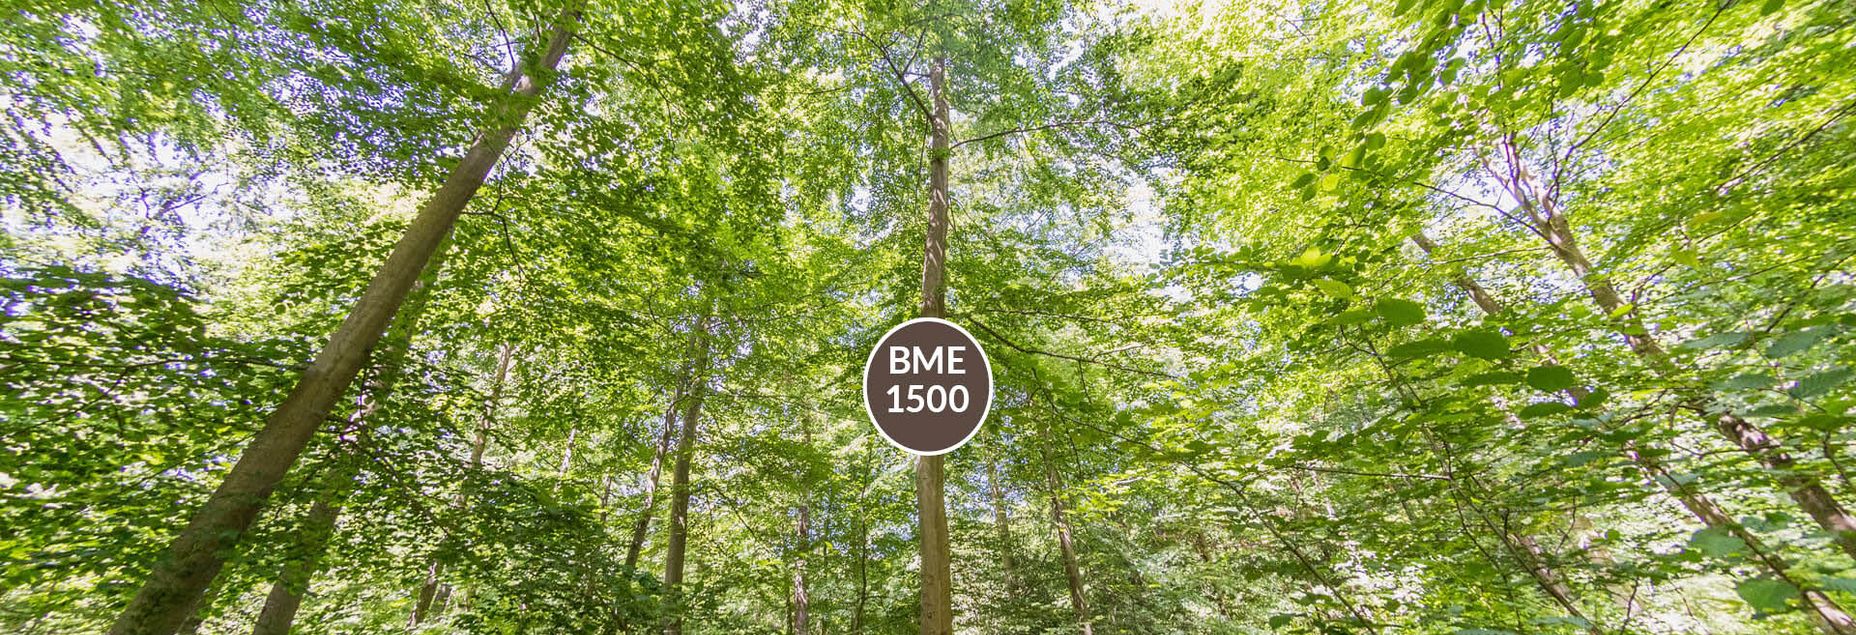 Baum BME 1500 - Fisheyeperspektive